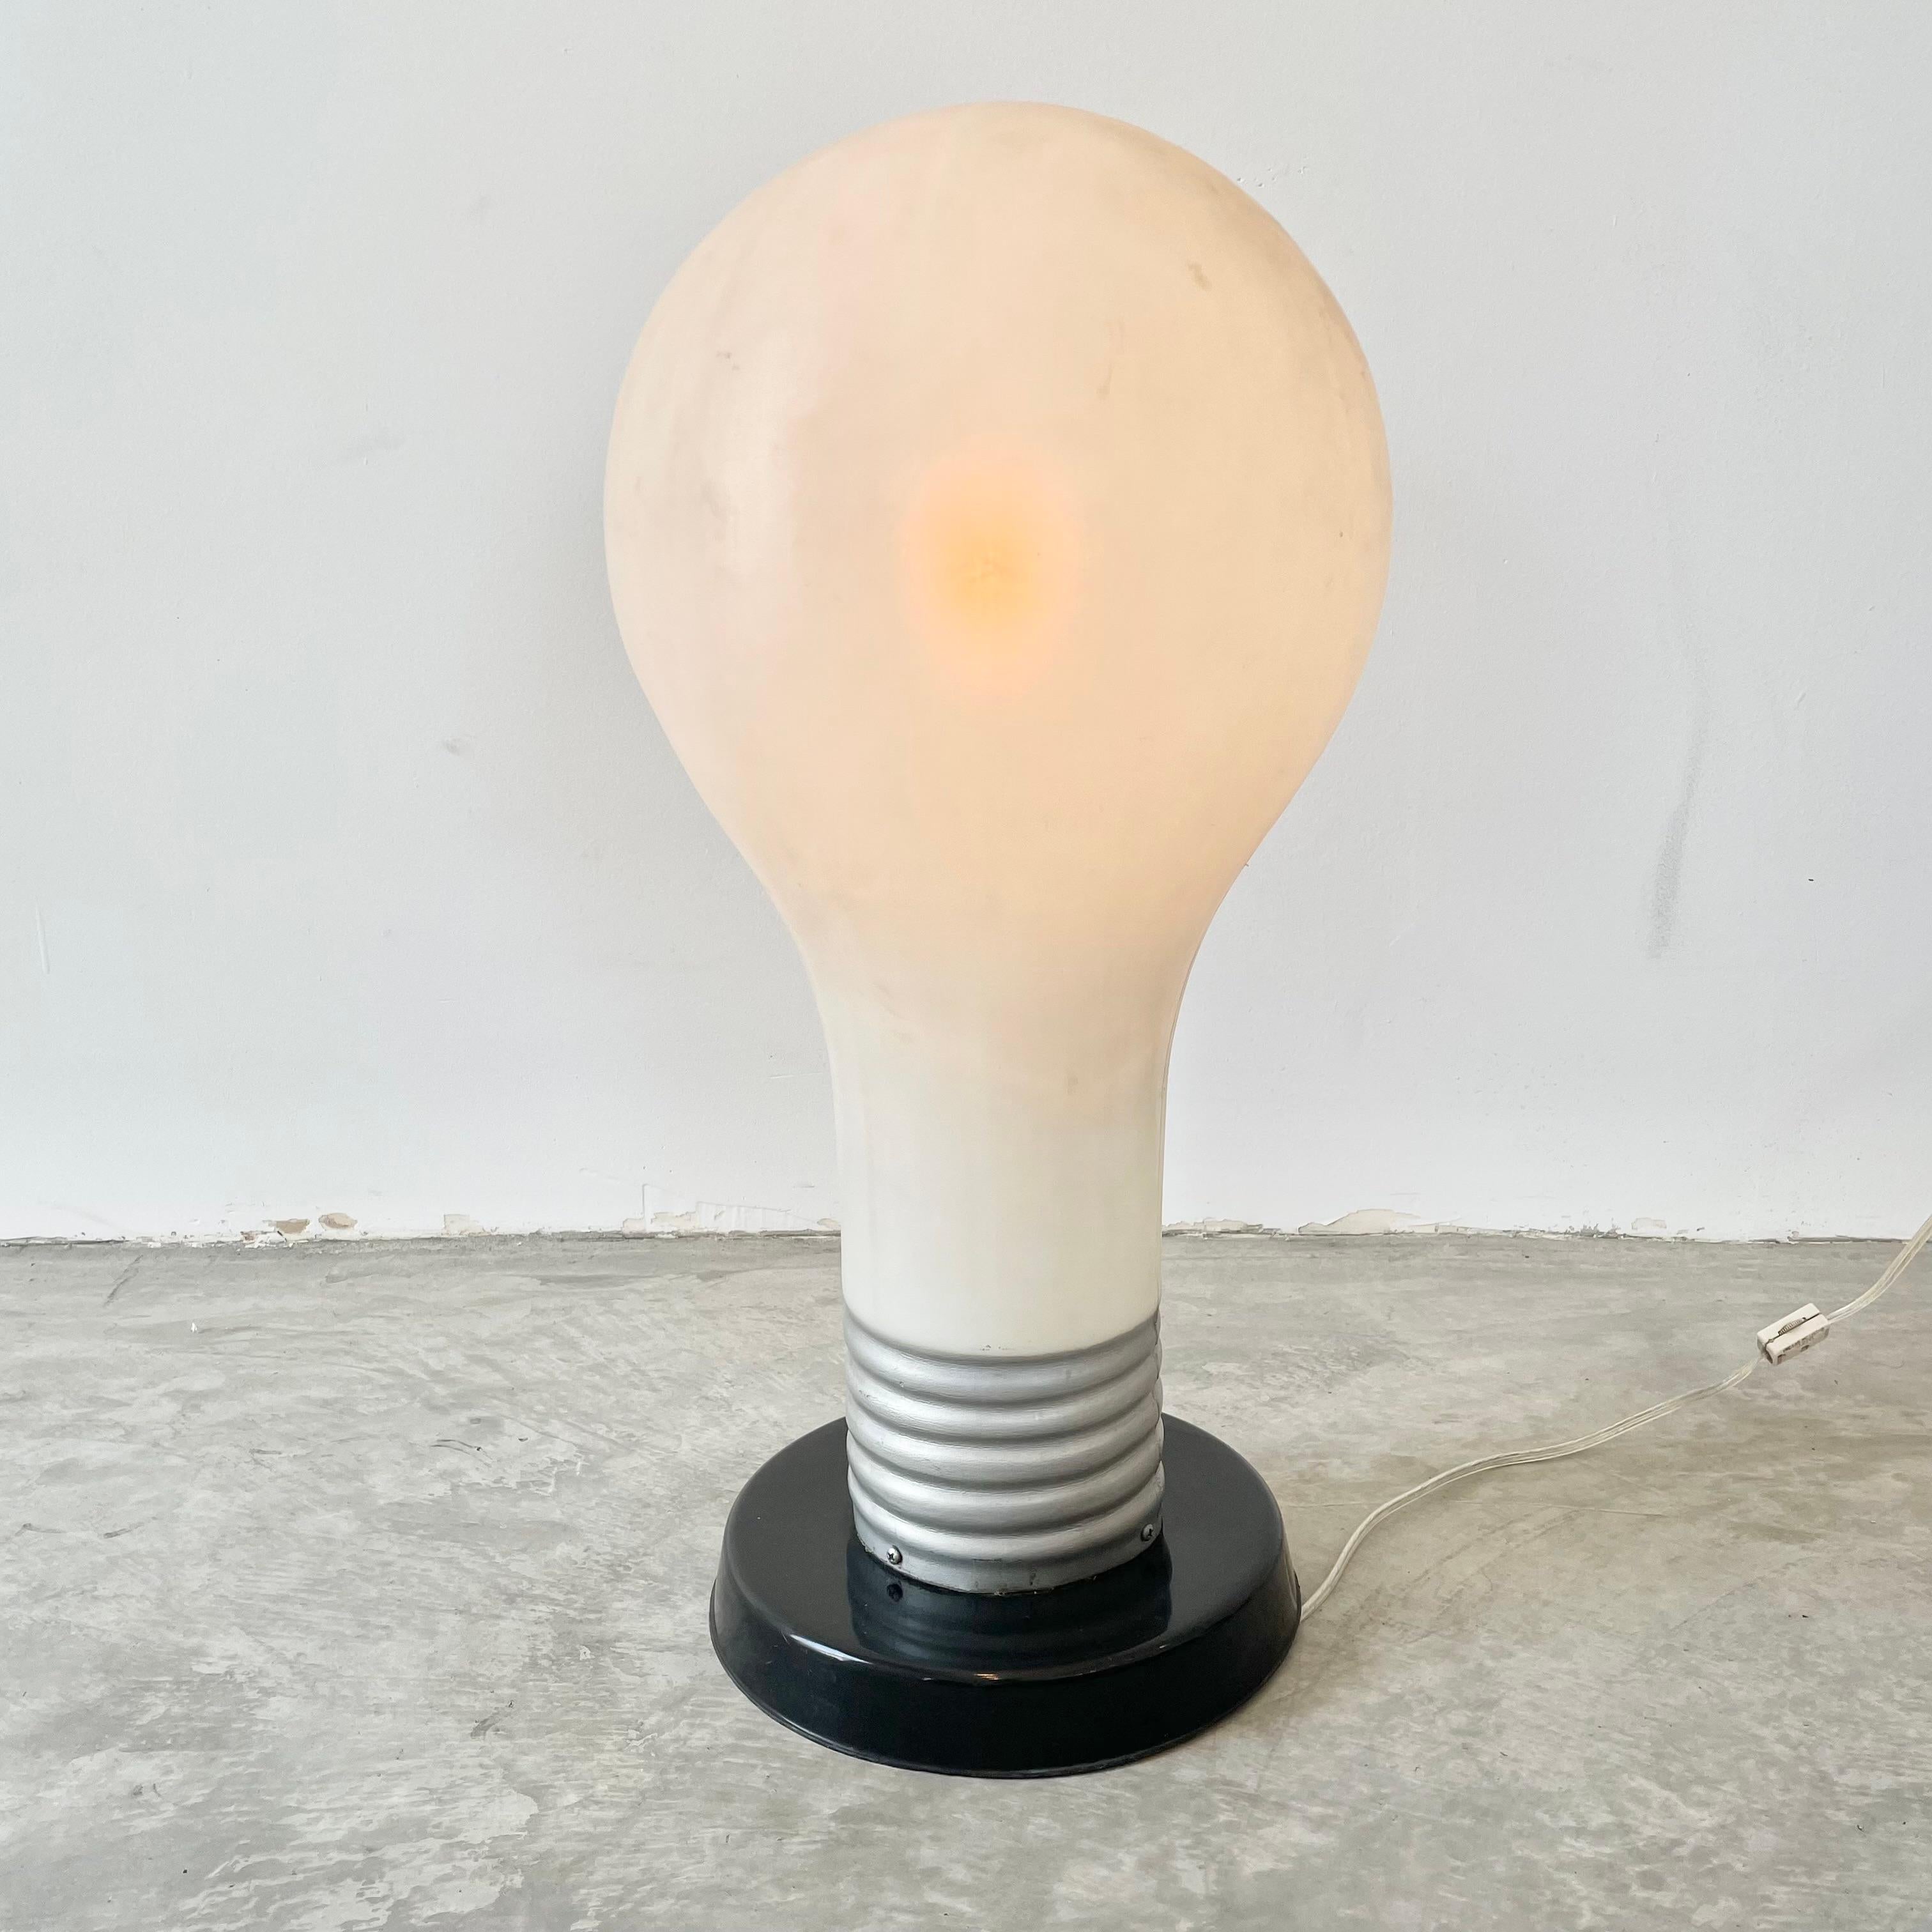 massive light bulb